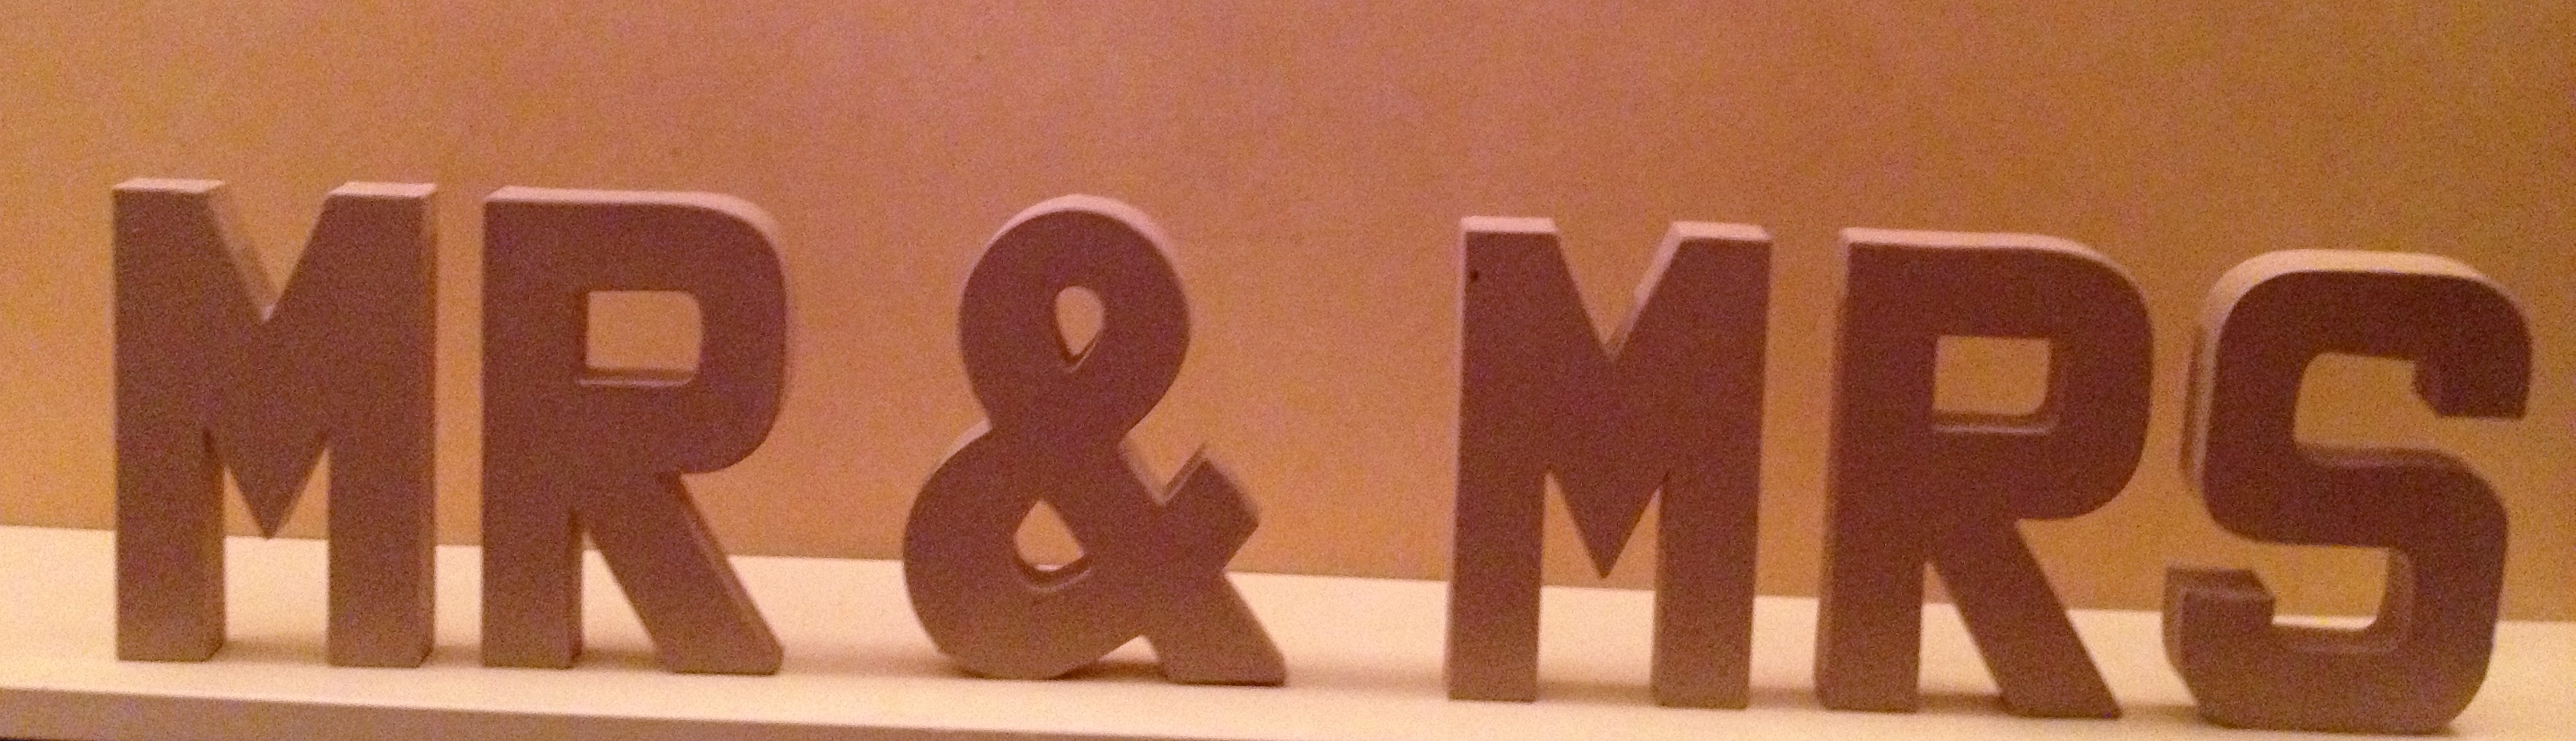 Large Mr & Mrs sign